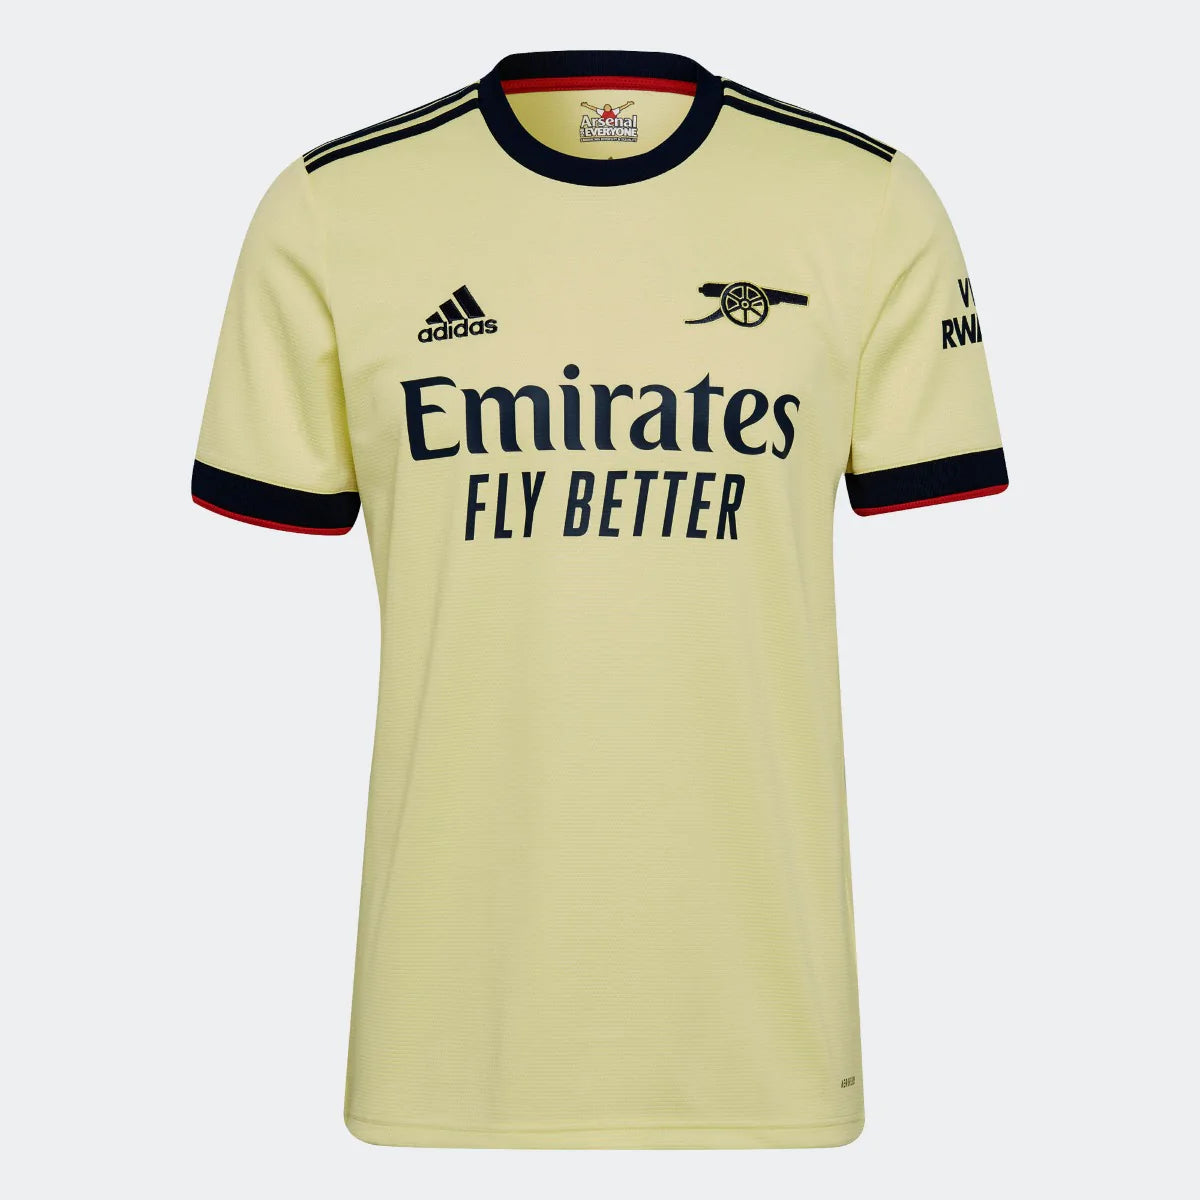 Adidas, Adidas 2021-22 Maglia da trasferta dell'Arsenal - Perla Citrino